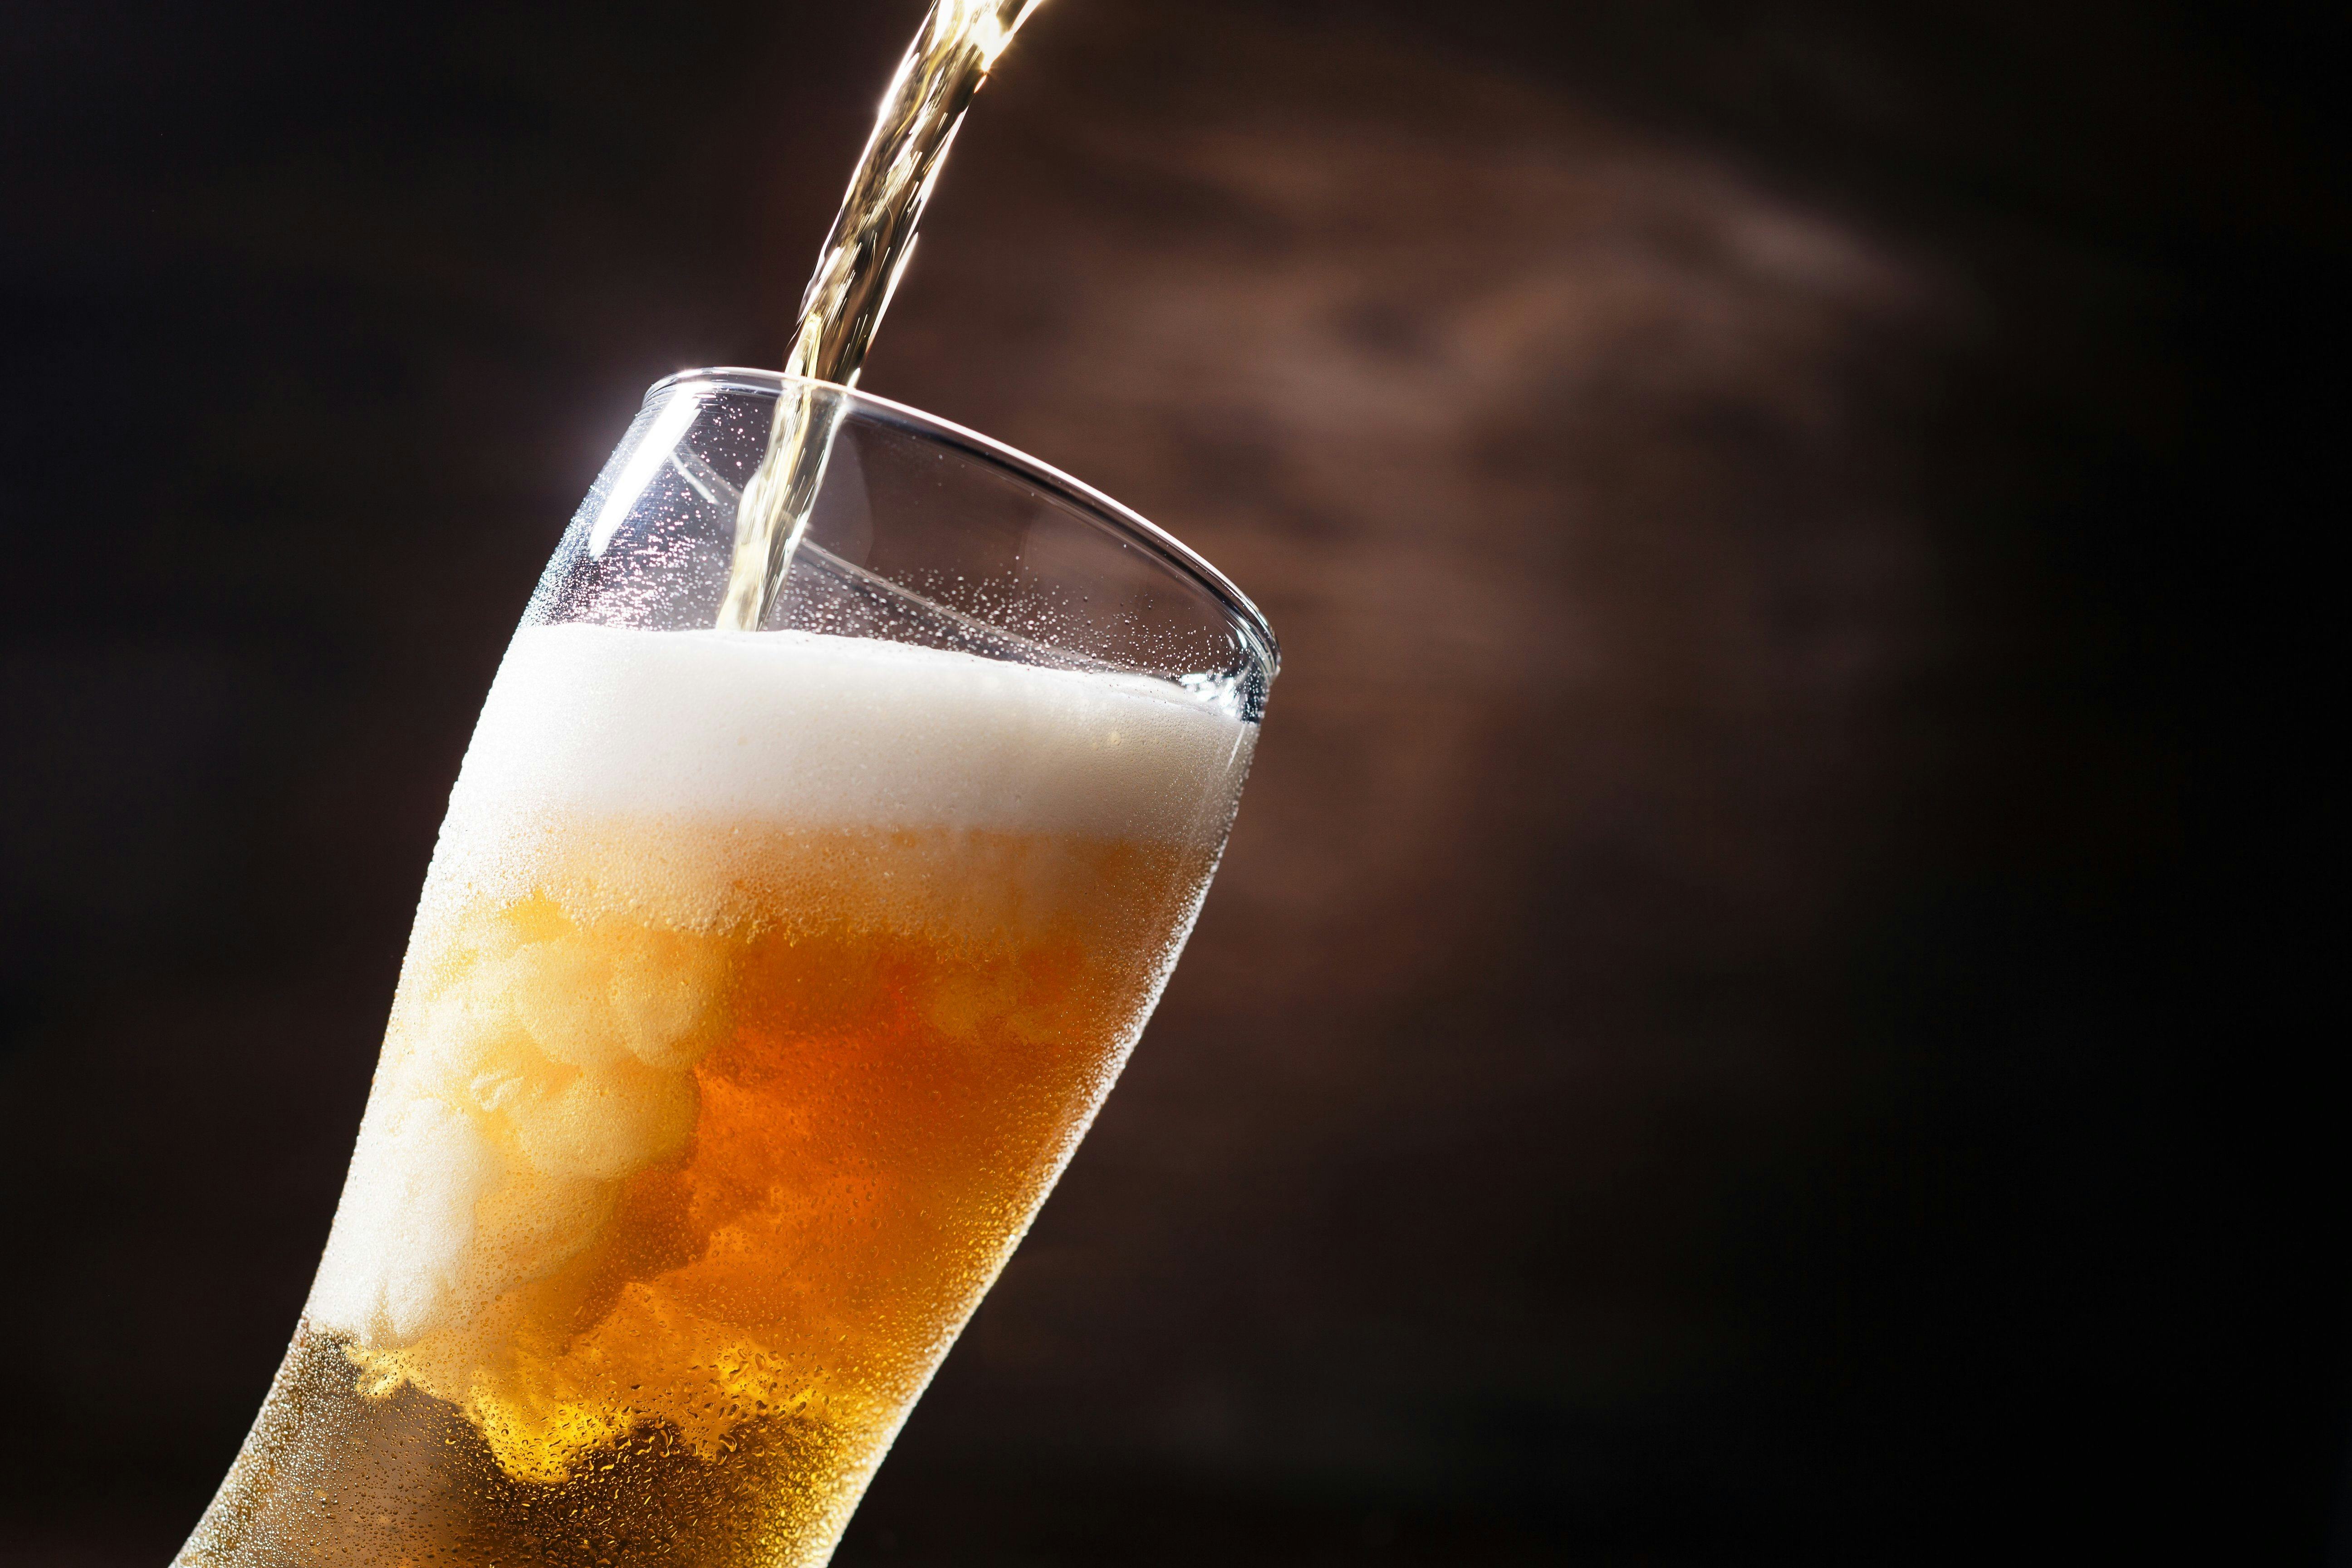 Keuringsdienst gaat bier testen voor WK